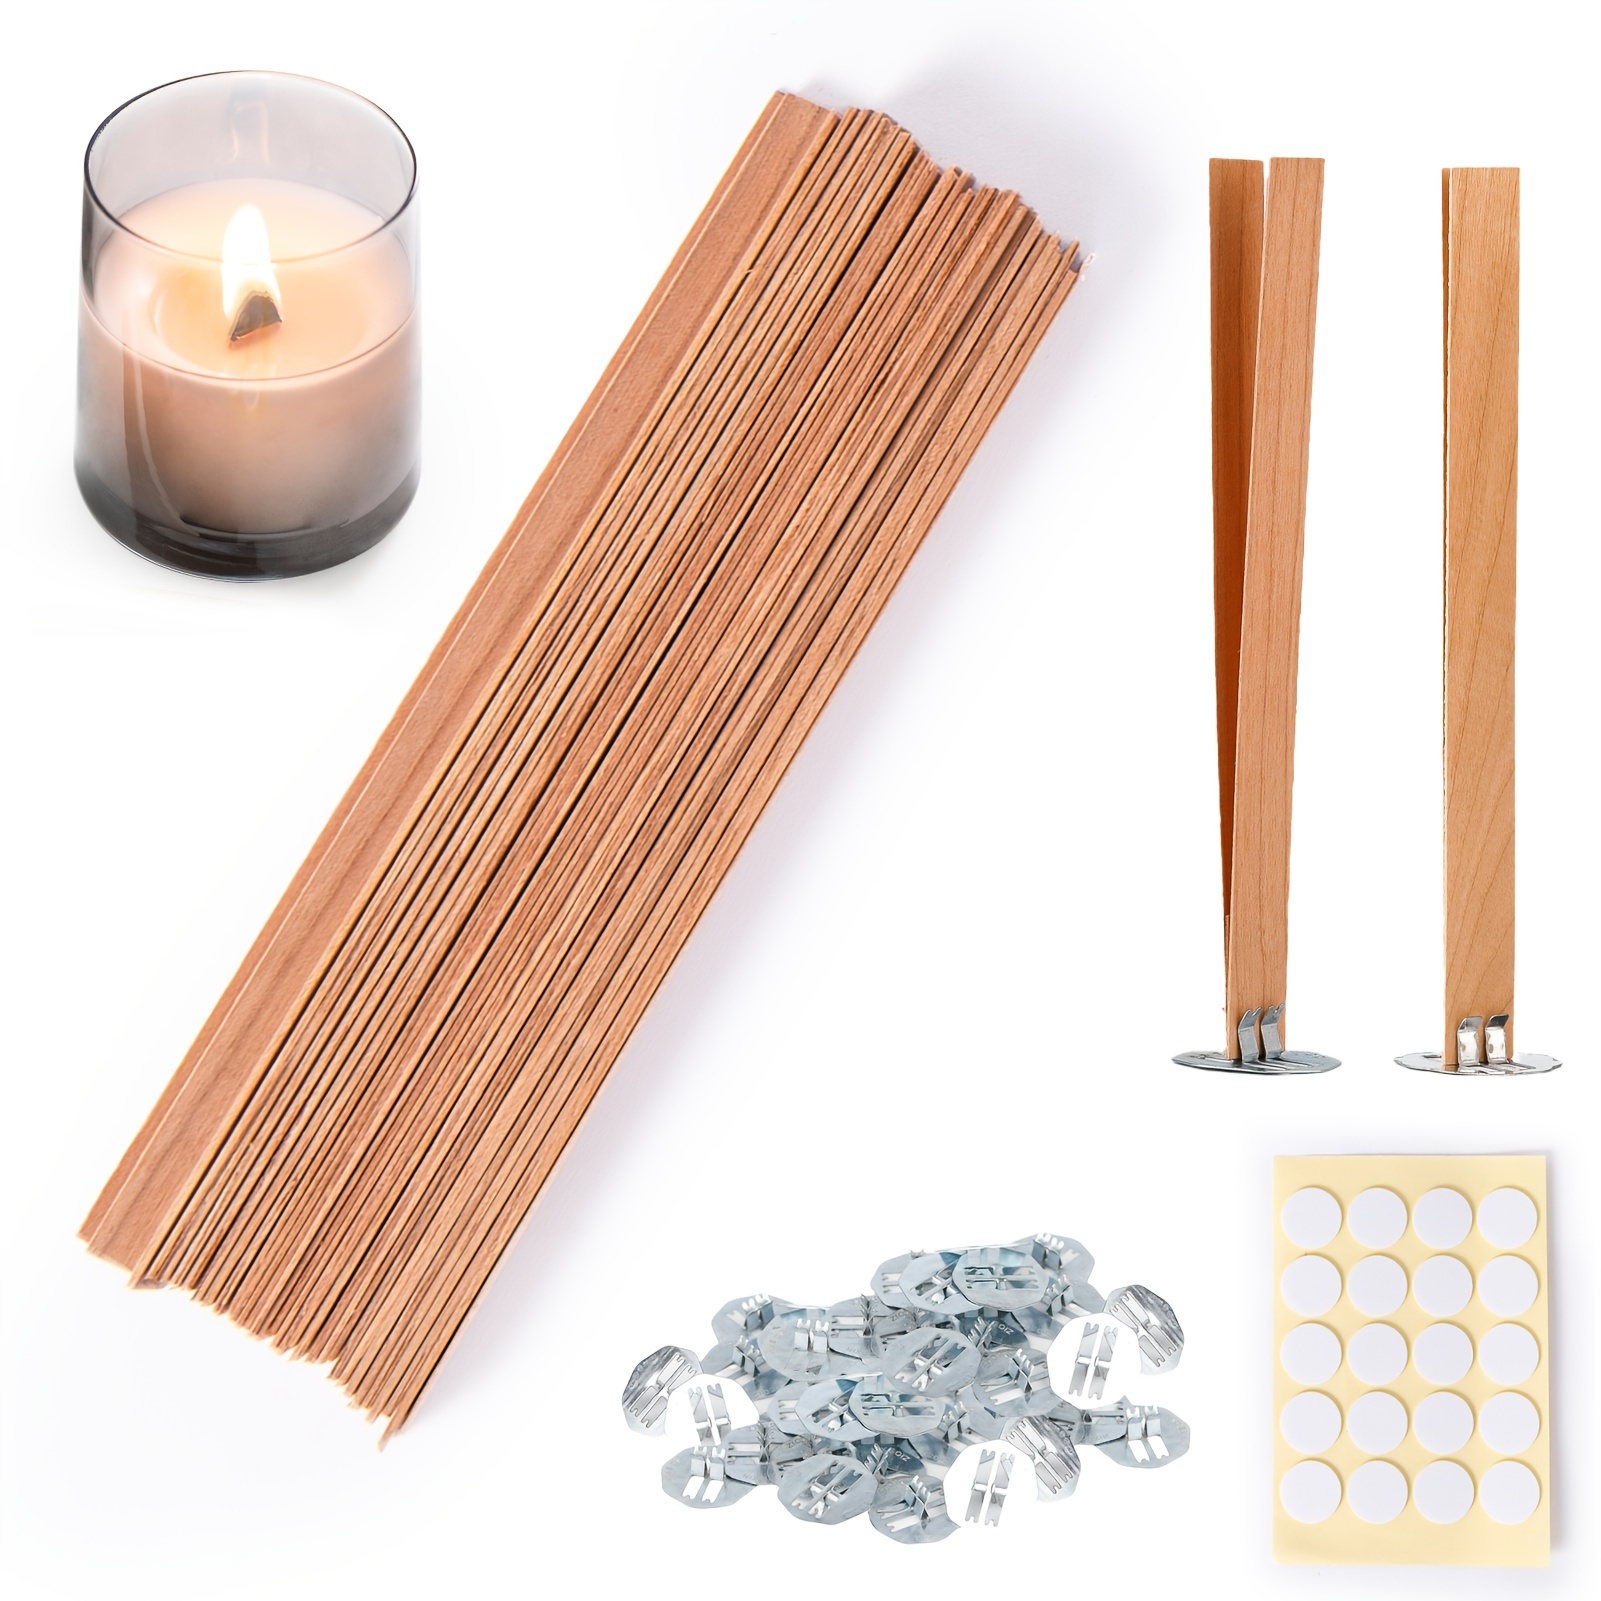 Modera Kit de fabricación de velas, juego de manualidades de velas de spa  con suministros para hacer [4] impresionantes velas de soja, incluye latas